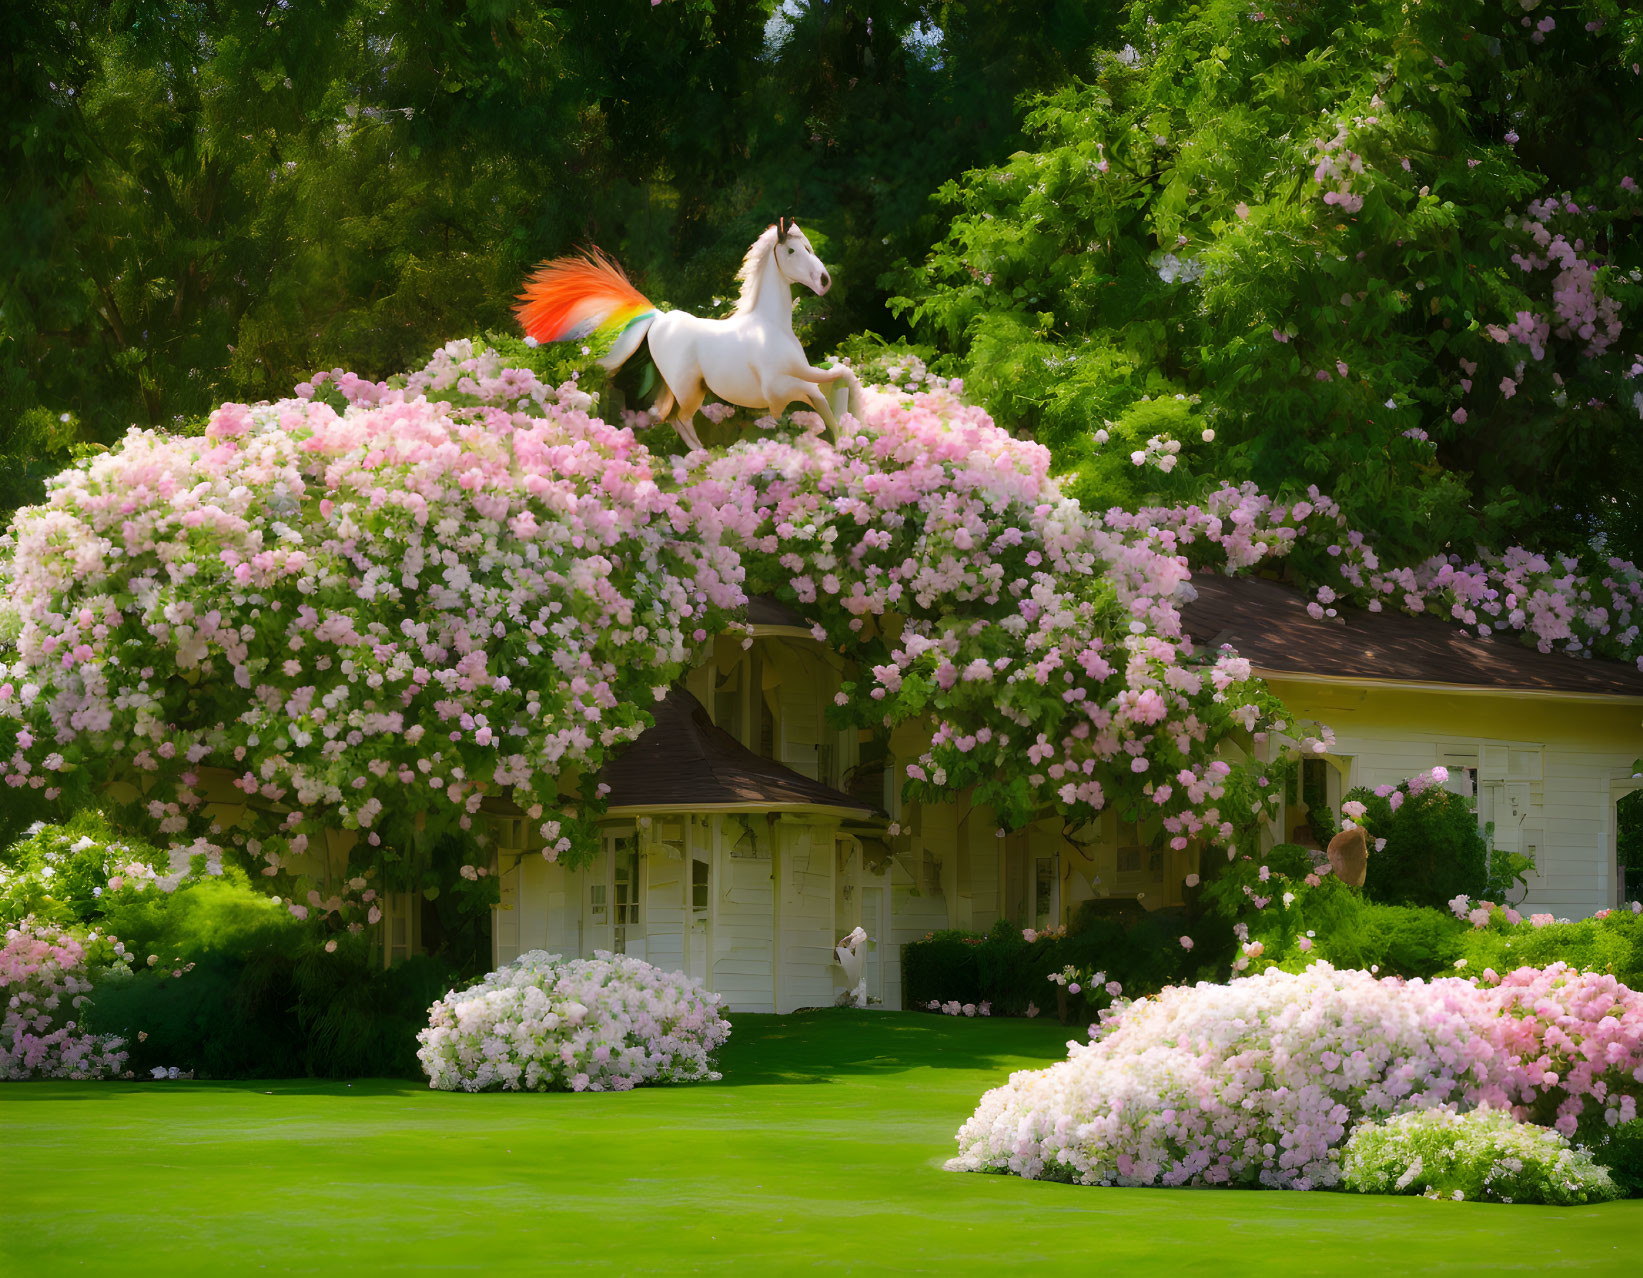 White horse with orange mane on pink bush with house background